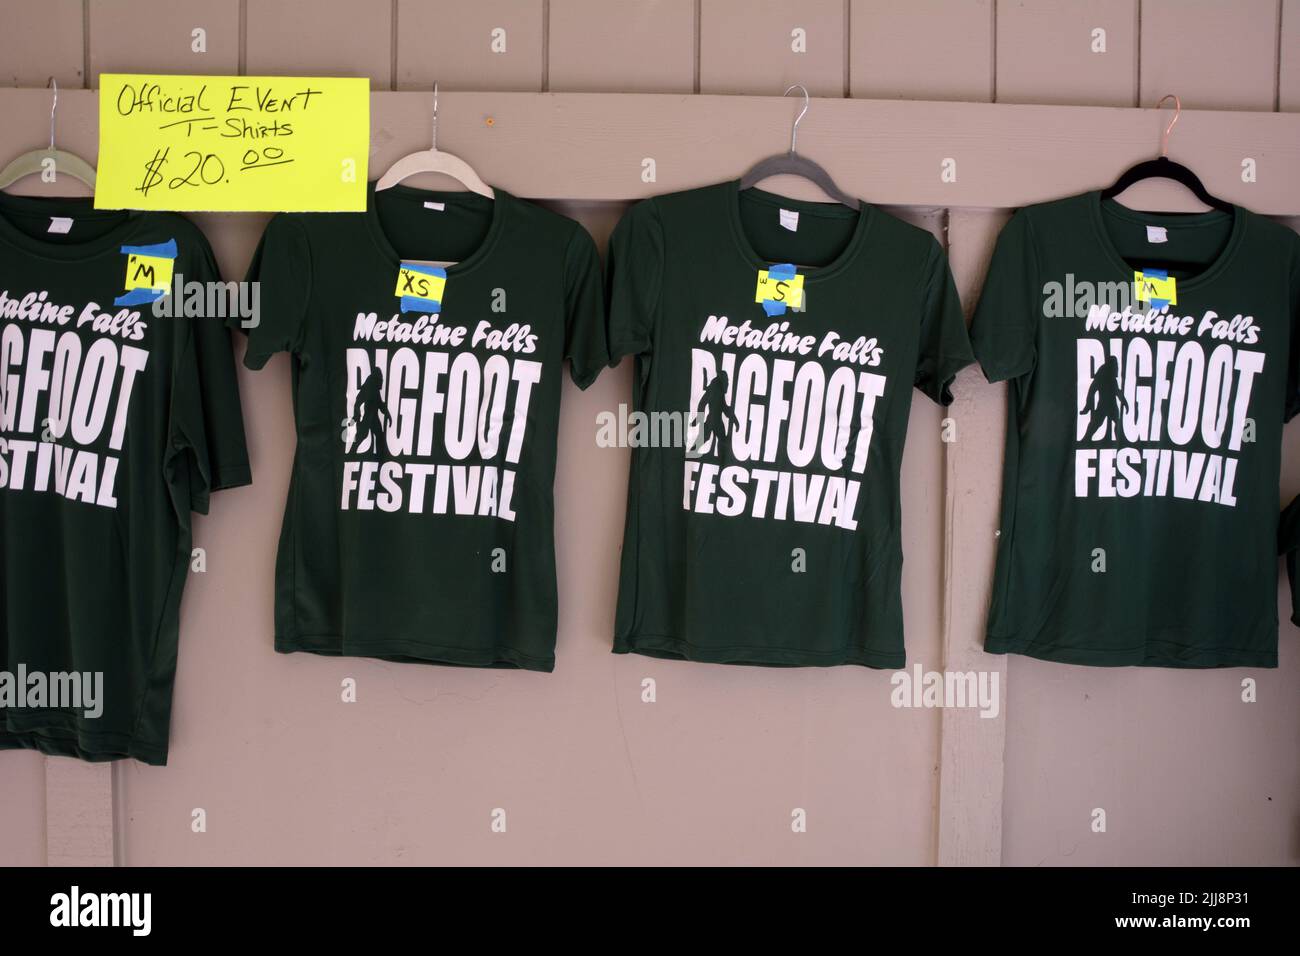 Camisetas a la venta expuestas en los terrenos del MetaLine Falls Bigfoot Festival en MetaLine Falls, Washington State, EE.UU. Foto de stock